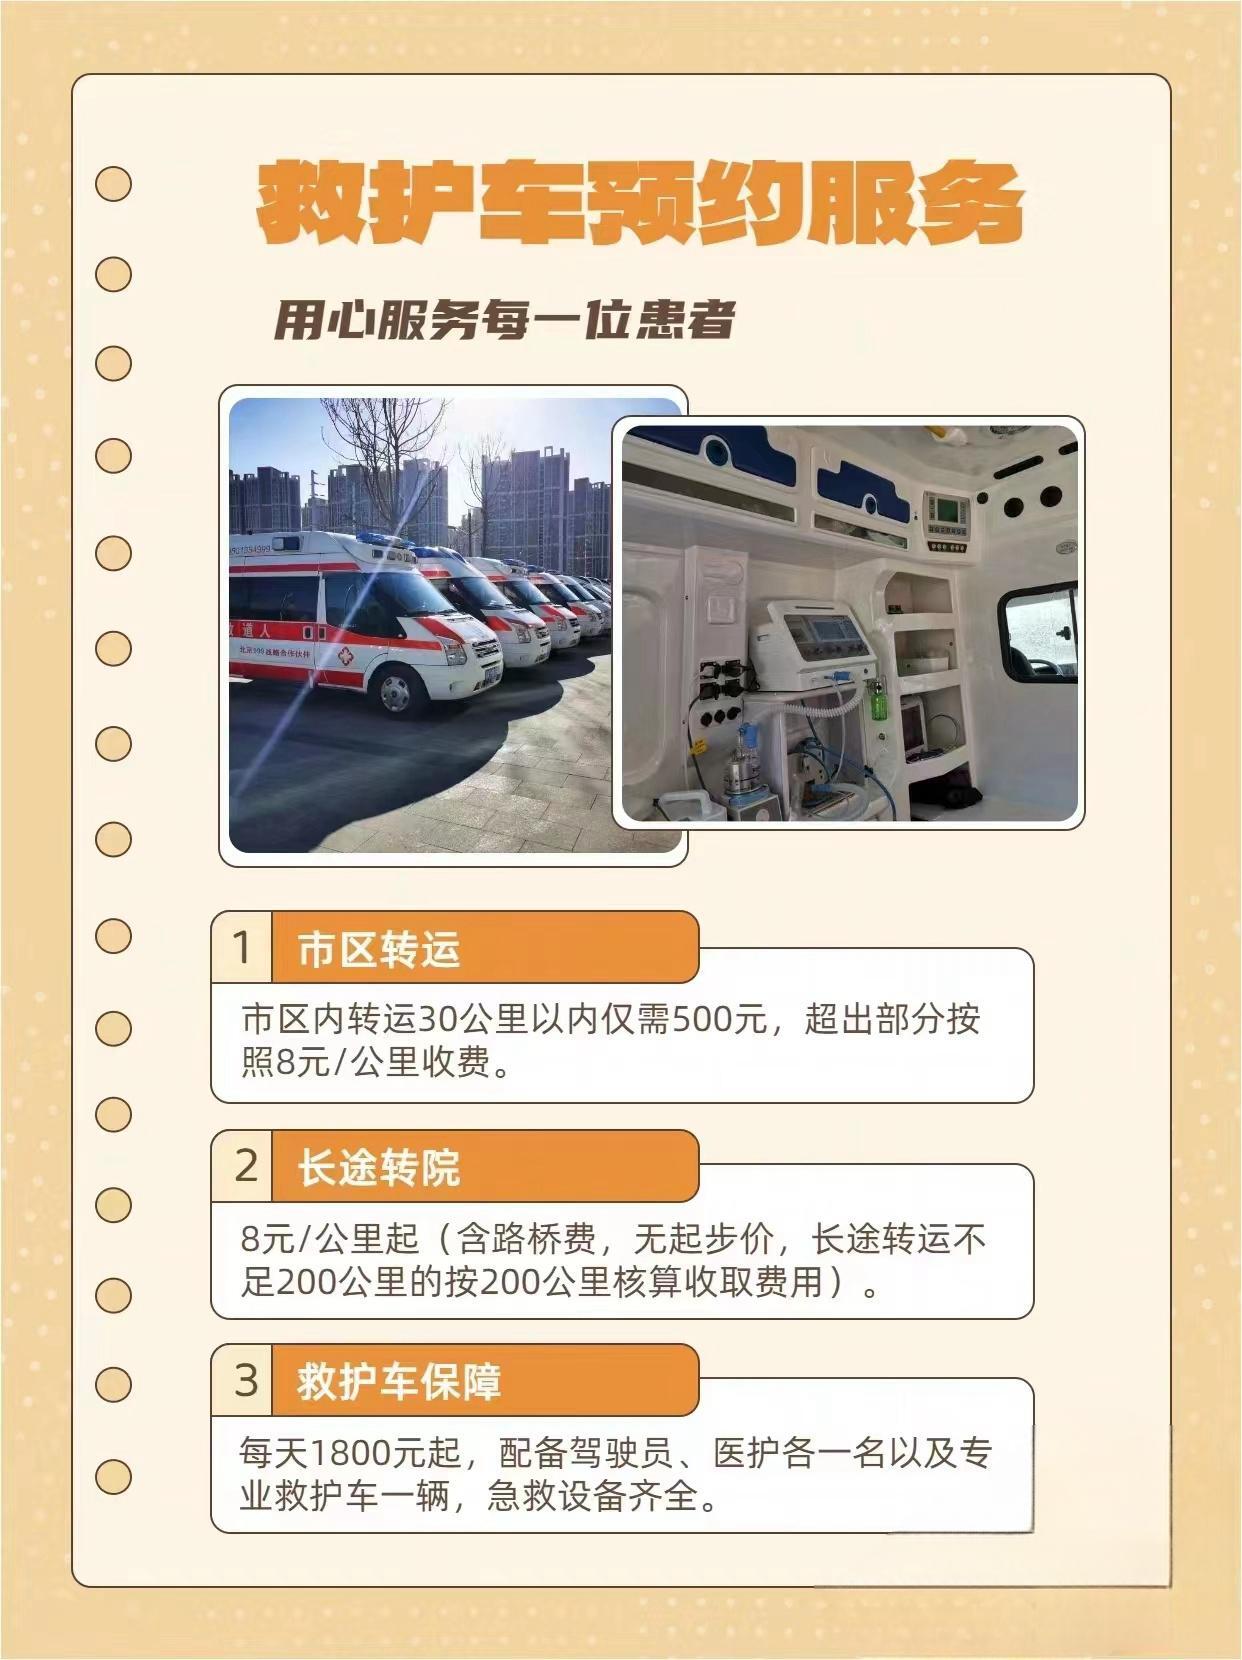 仙桃120转院救护车跨省接送-24小时服务